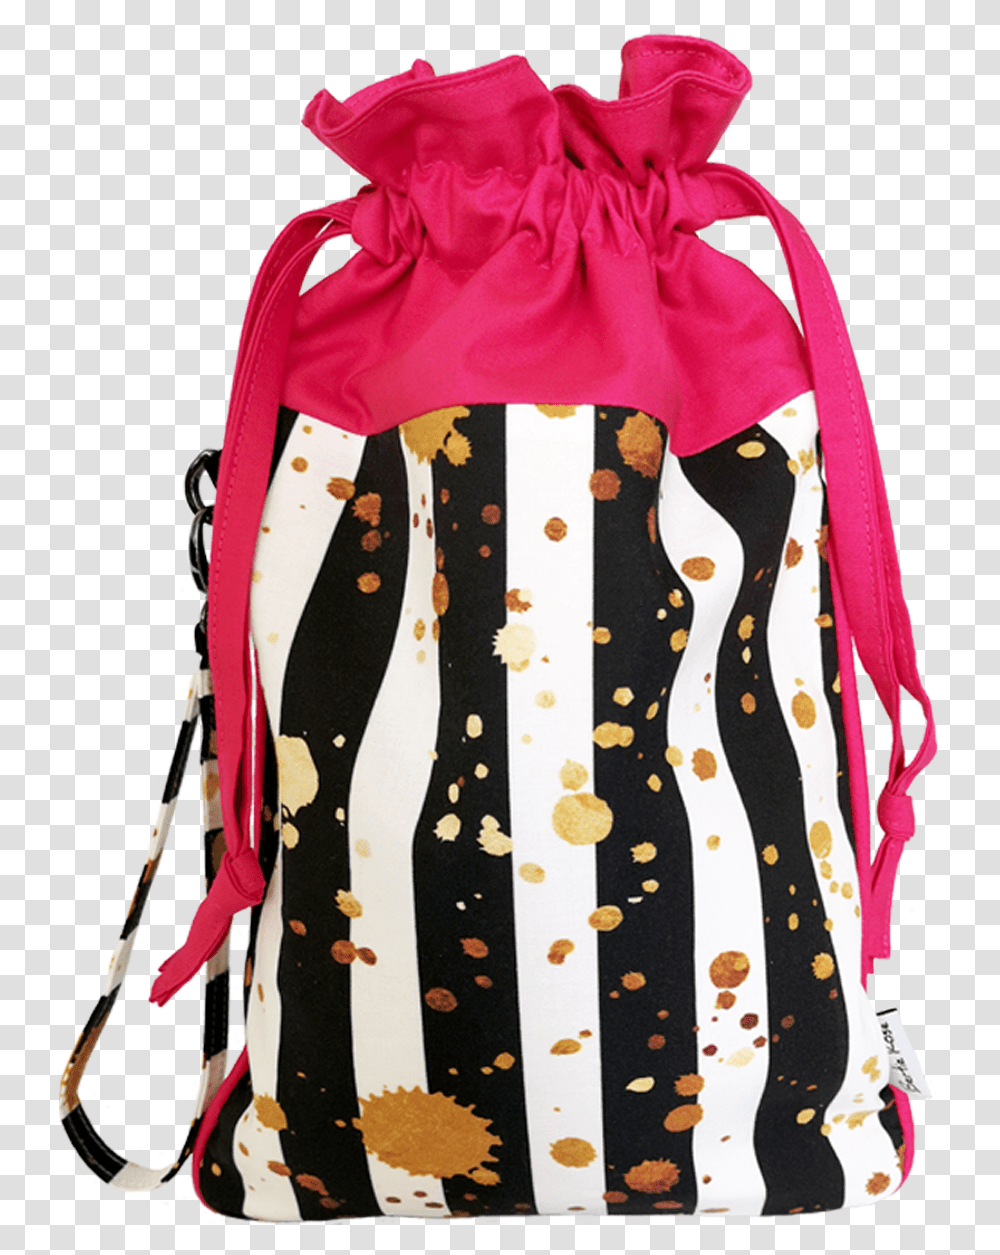 Black Gold And Pink Drawstring Bag Bag, Apparel, Backpack, Tie Transparent Png